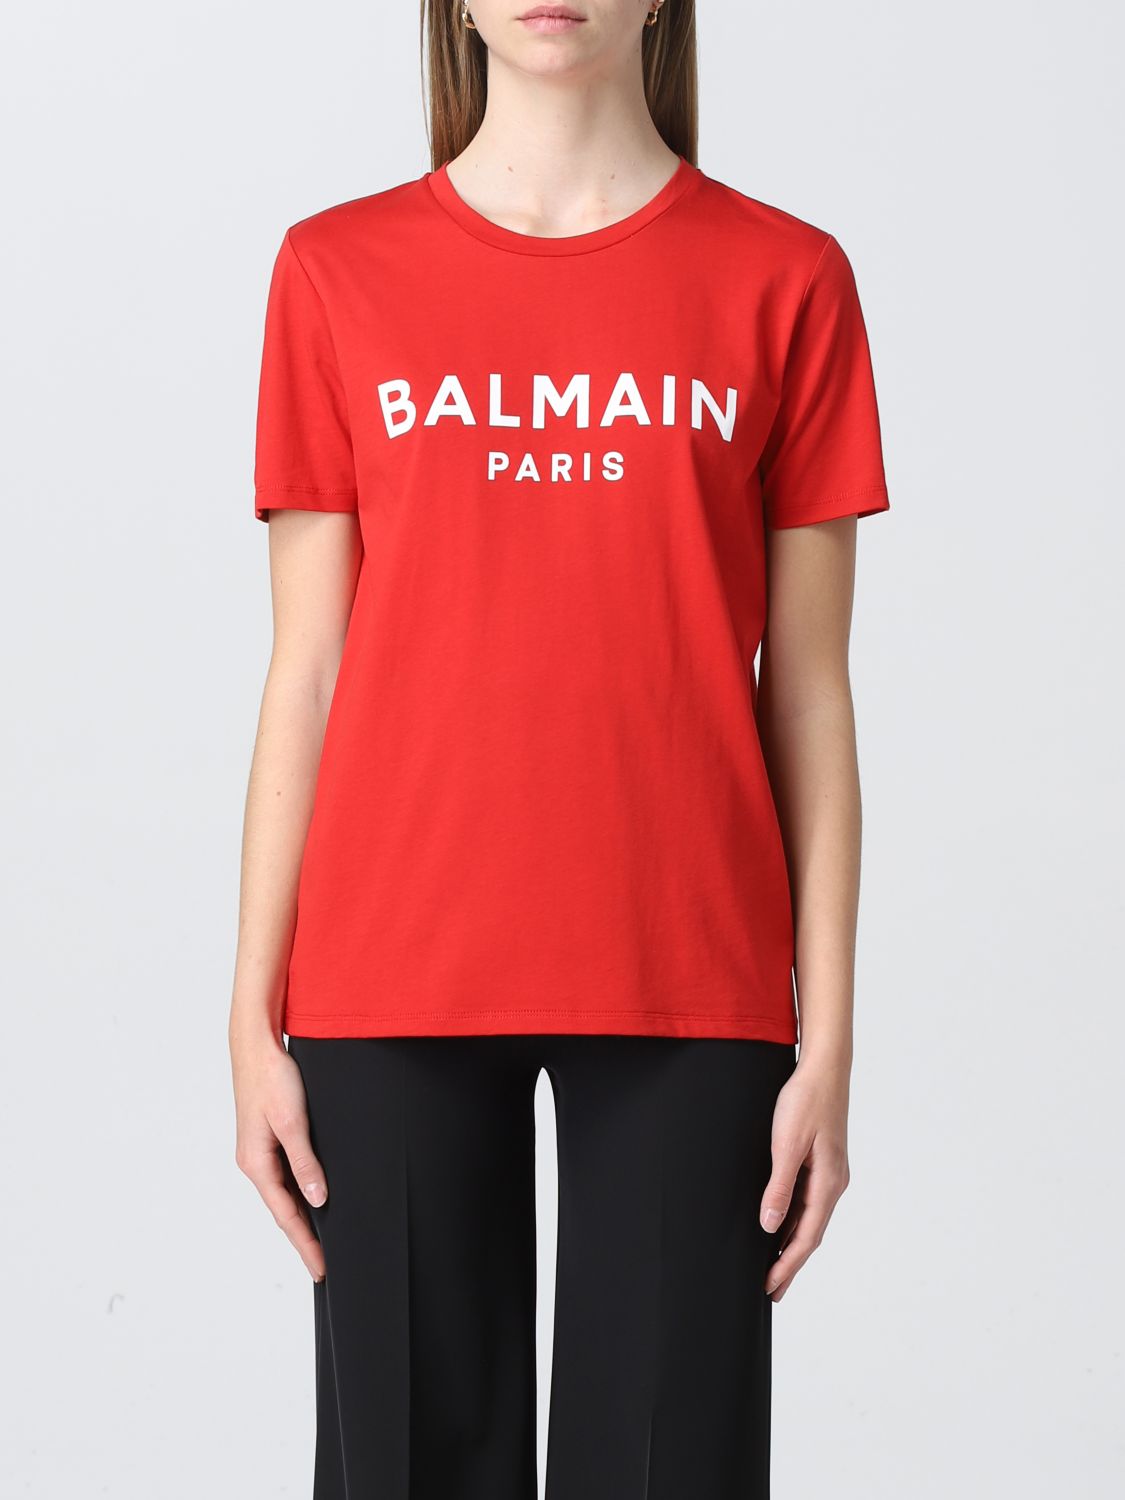 BALMAIN: T-shirt women | T-Shirt Balmain Women Red | T-Shirt Balmain ...